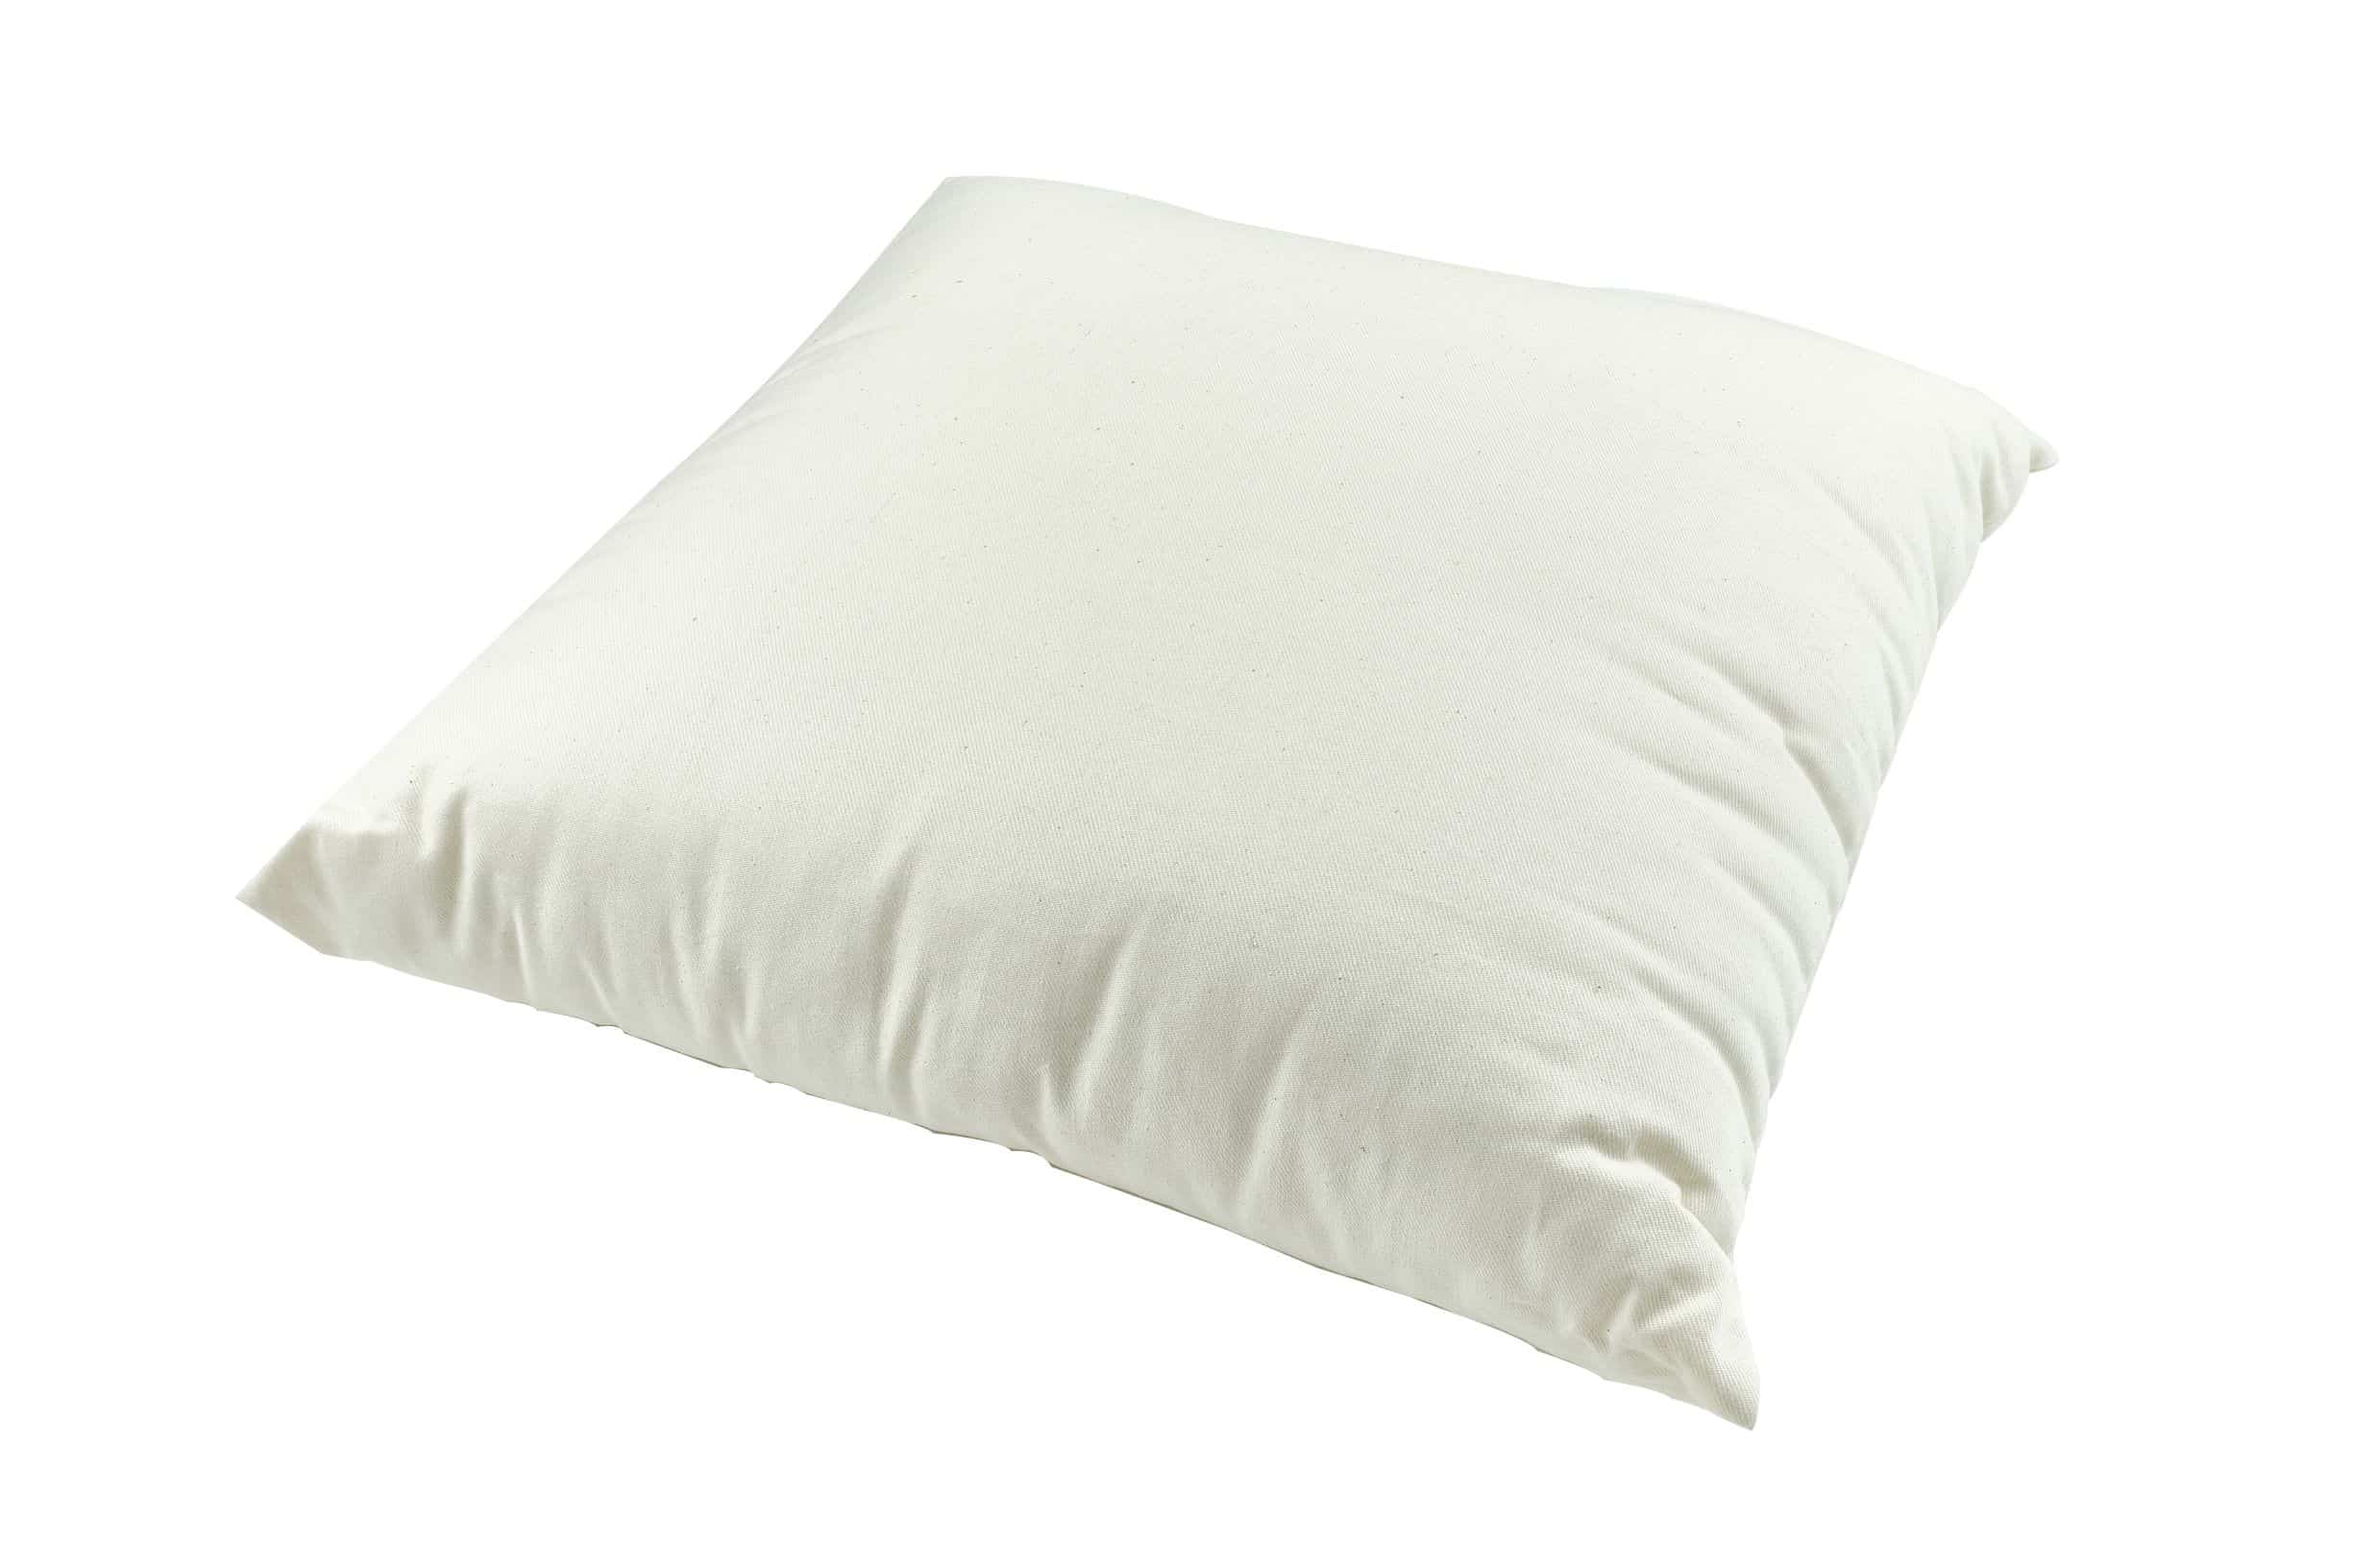 Organic Throw Pillow Insert